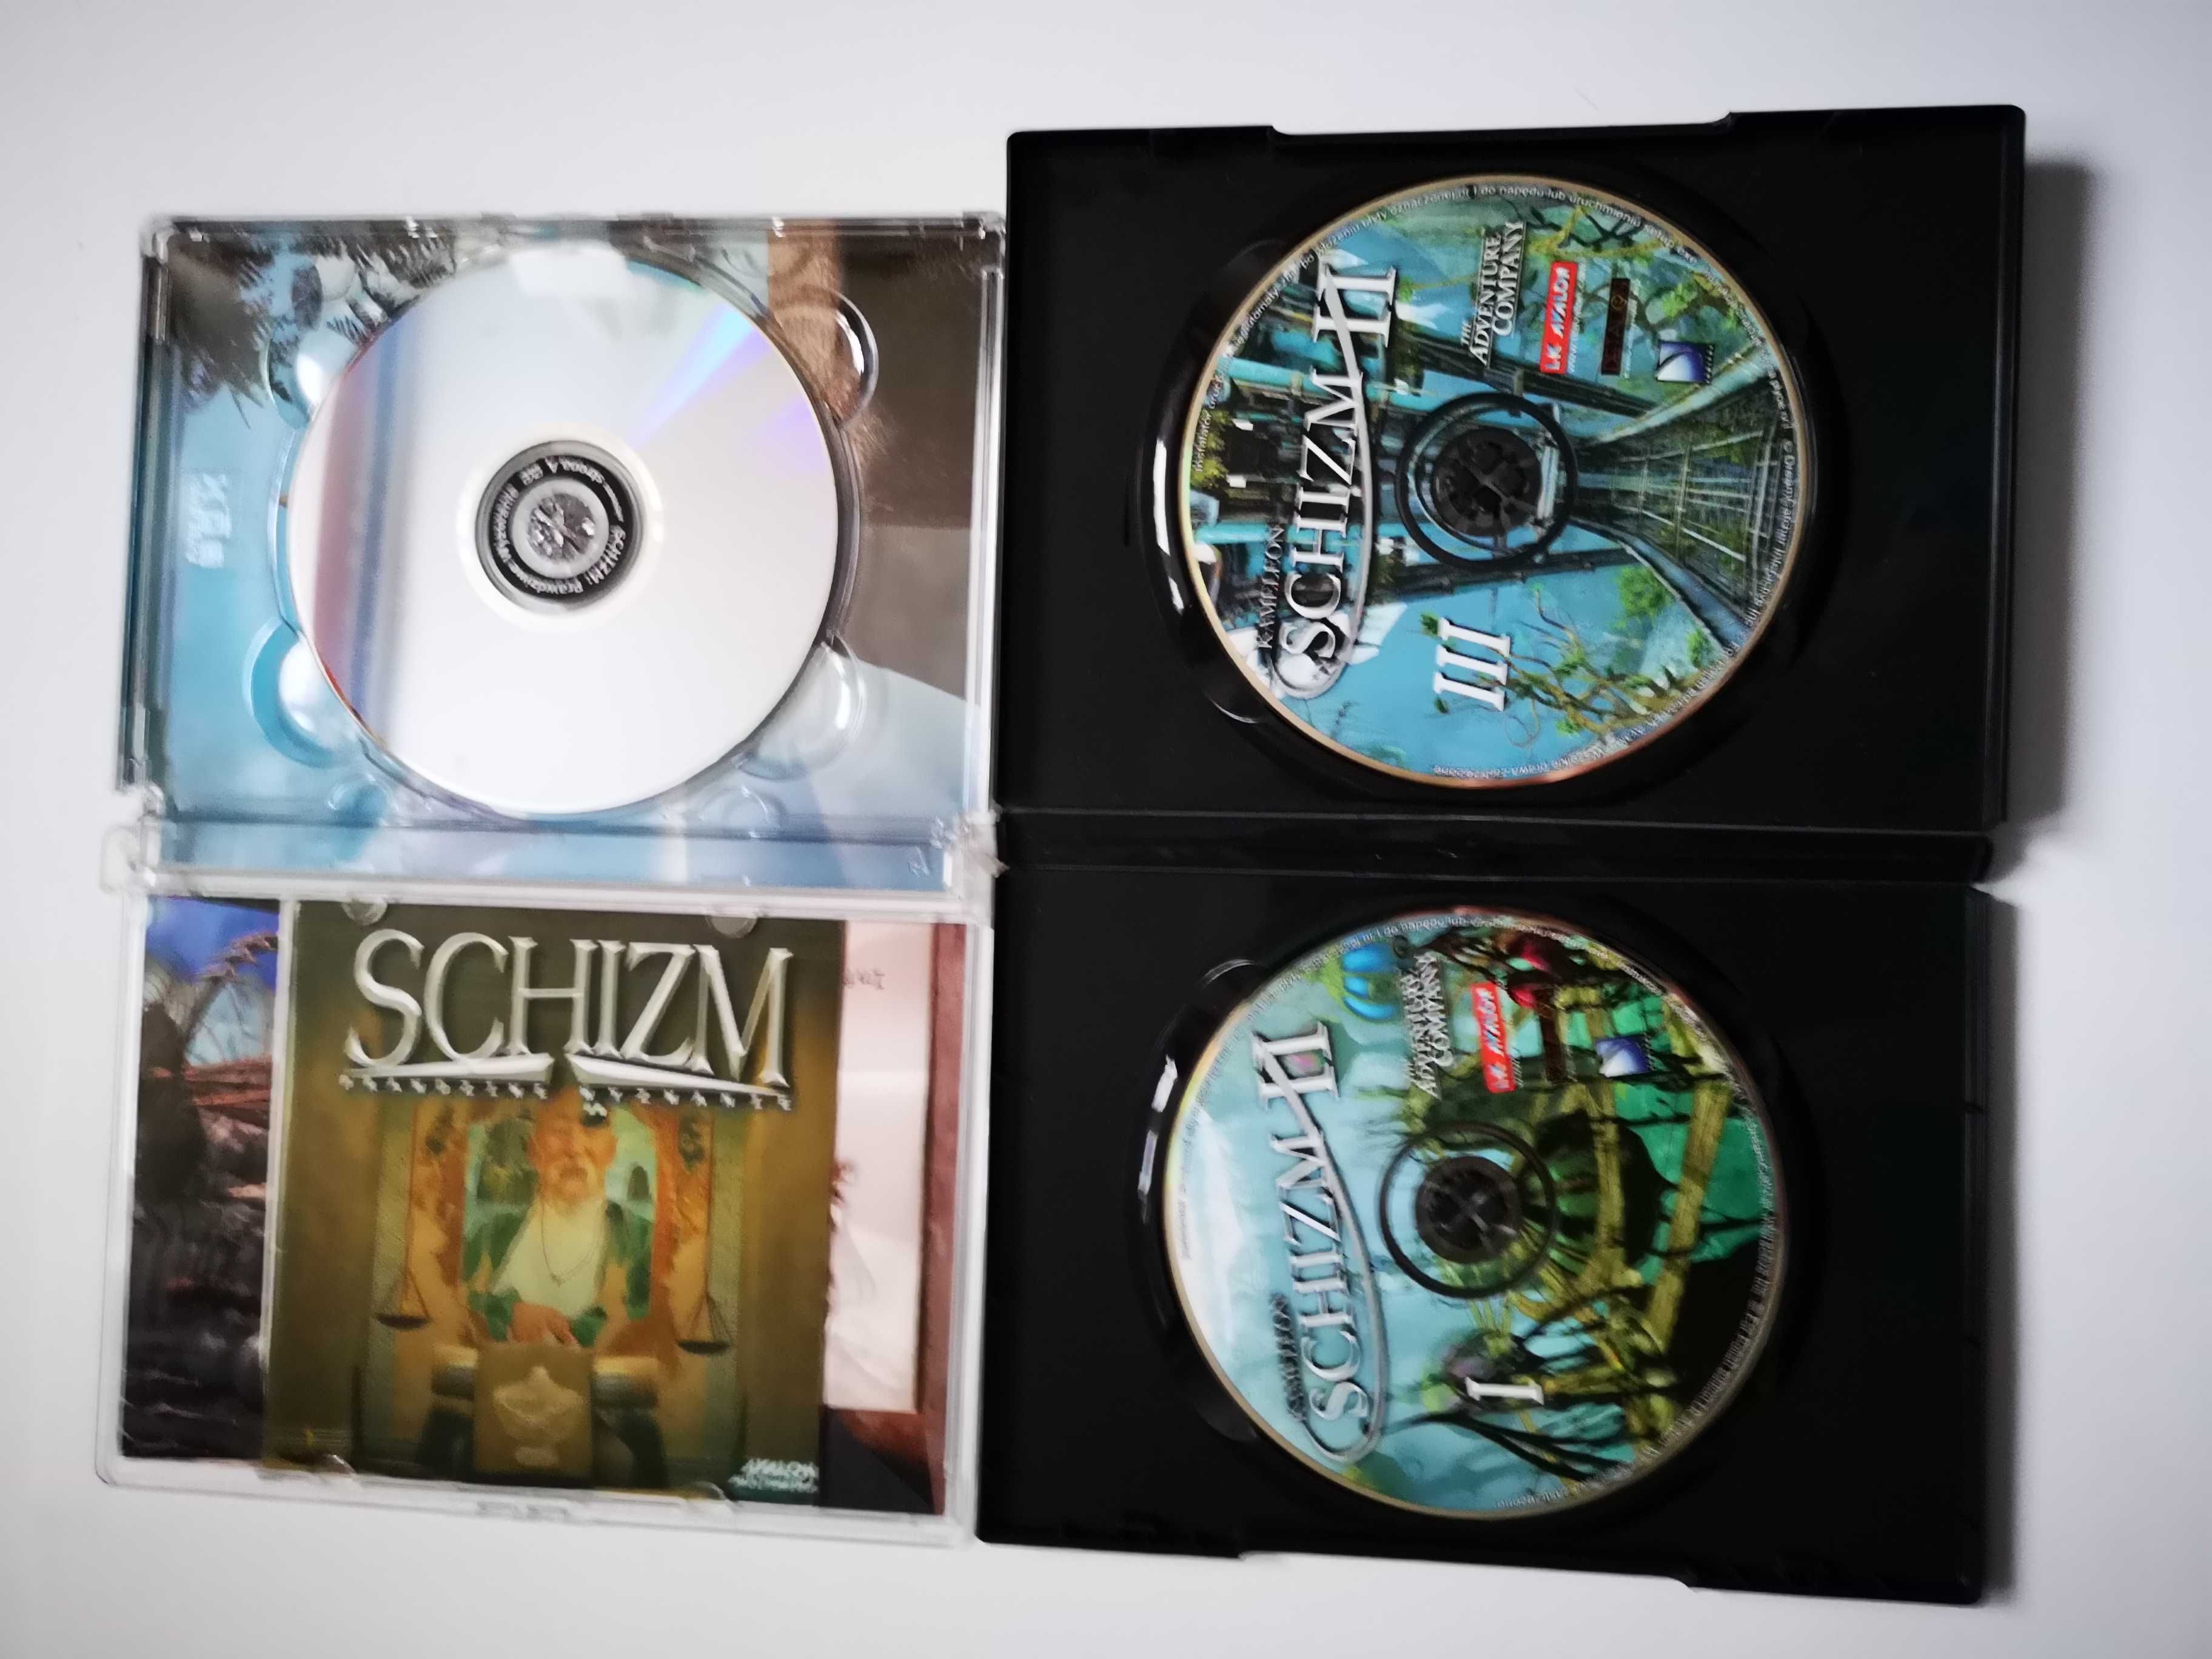 Schizm - Prawdziwe Wyzwanie, Schizm II Kameleon, Gry PC DVD i CD